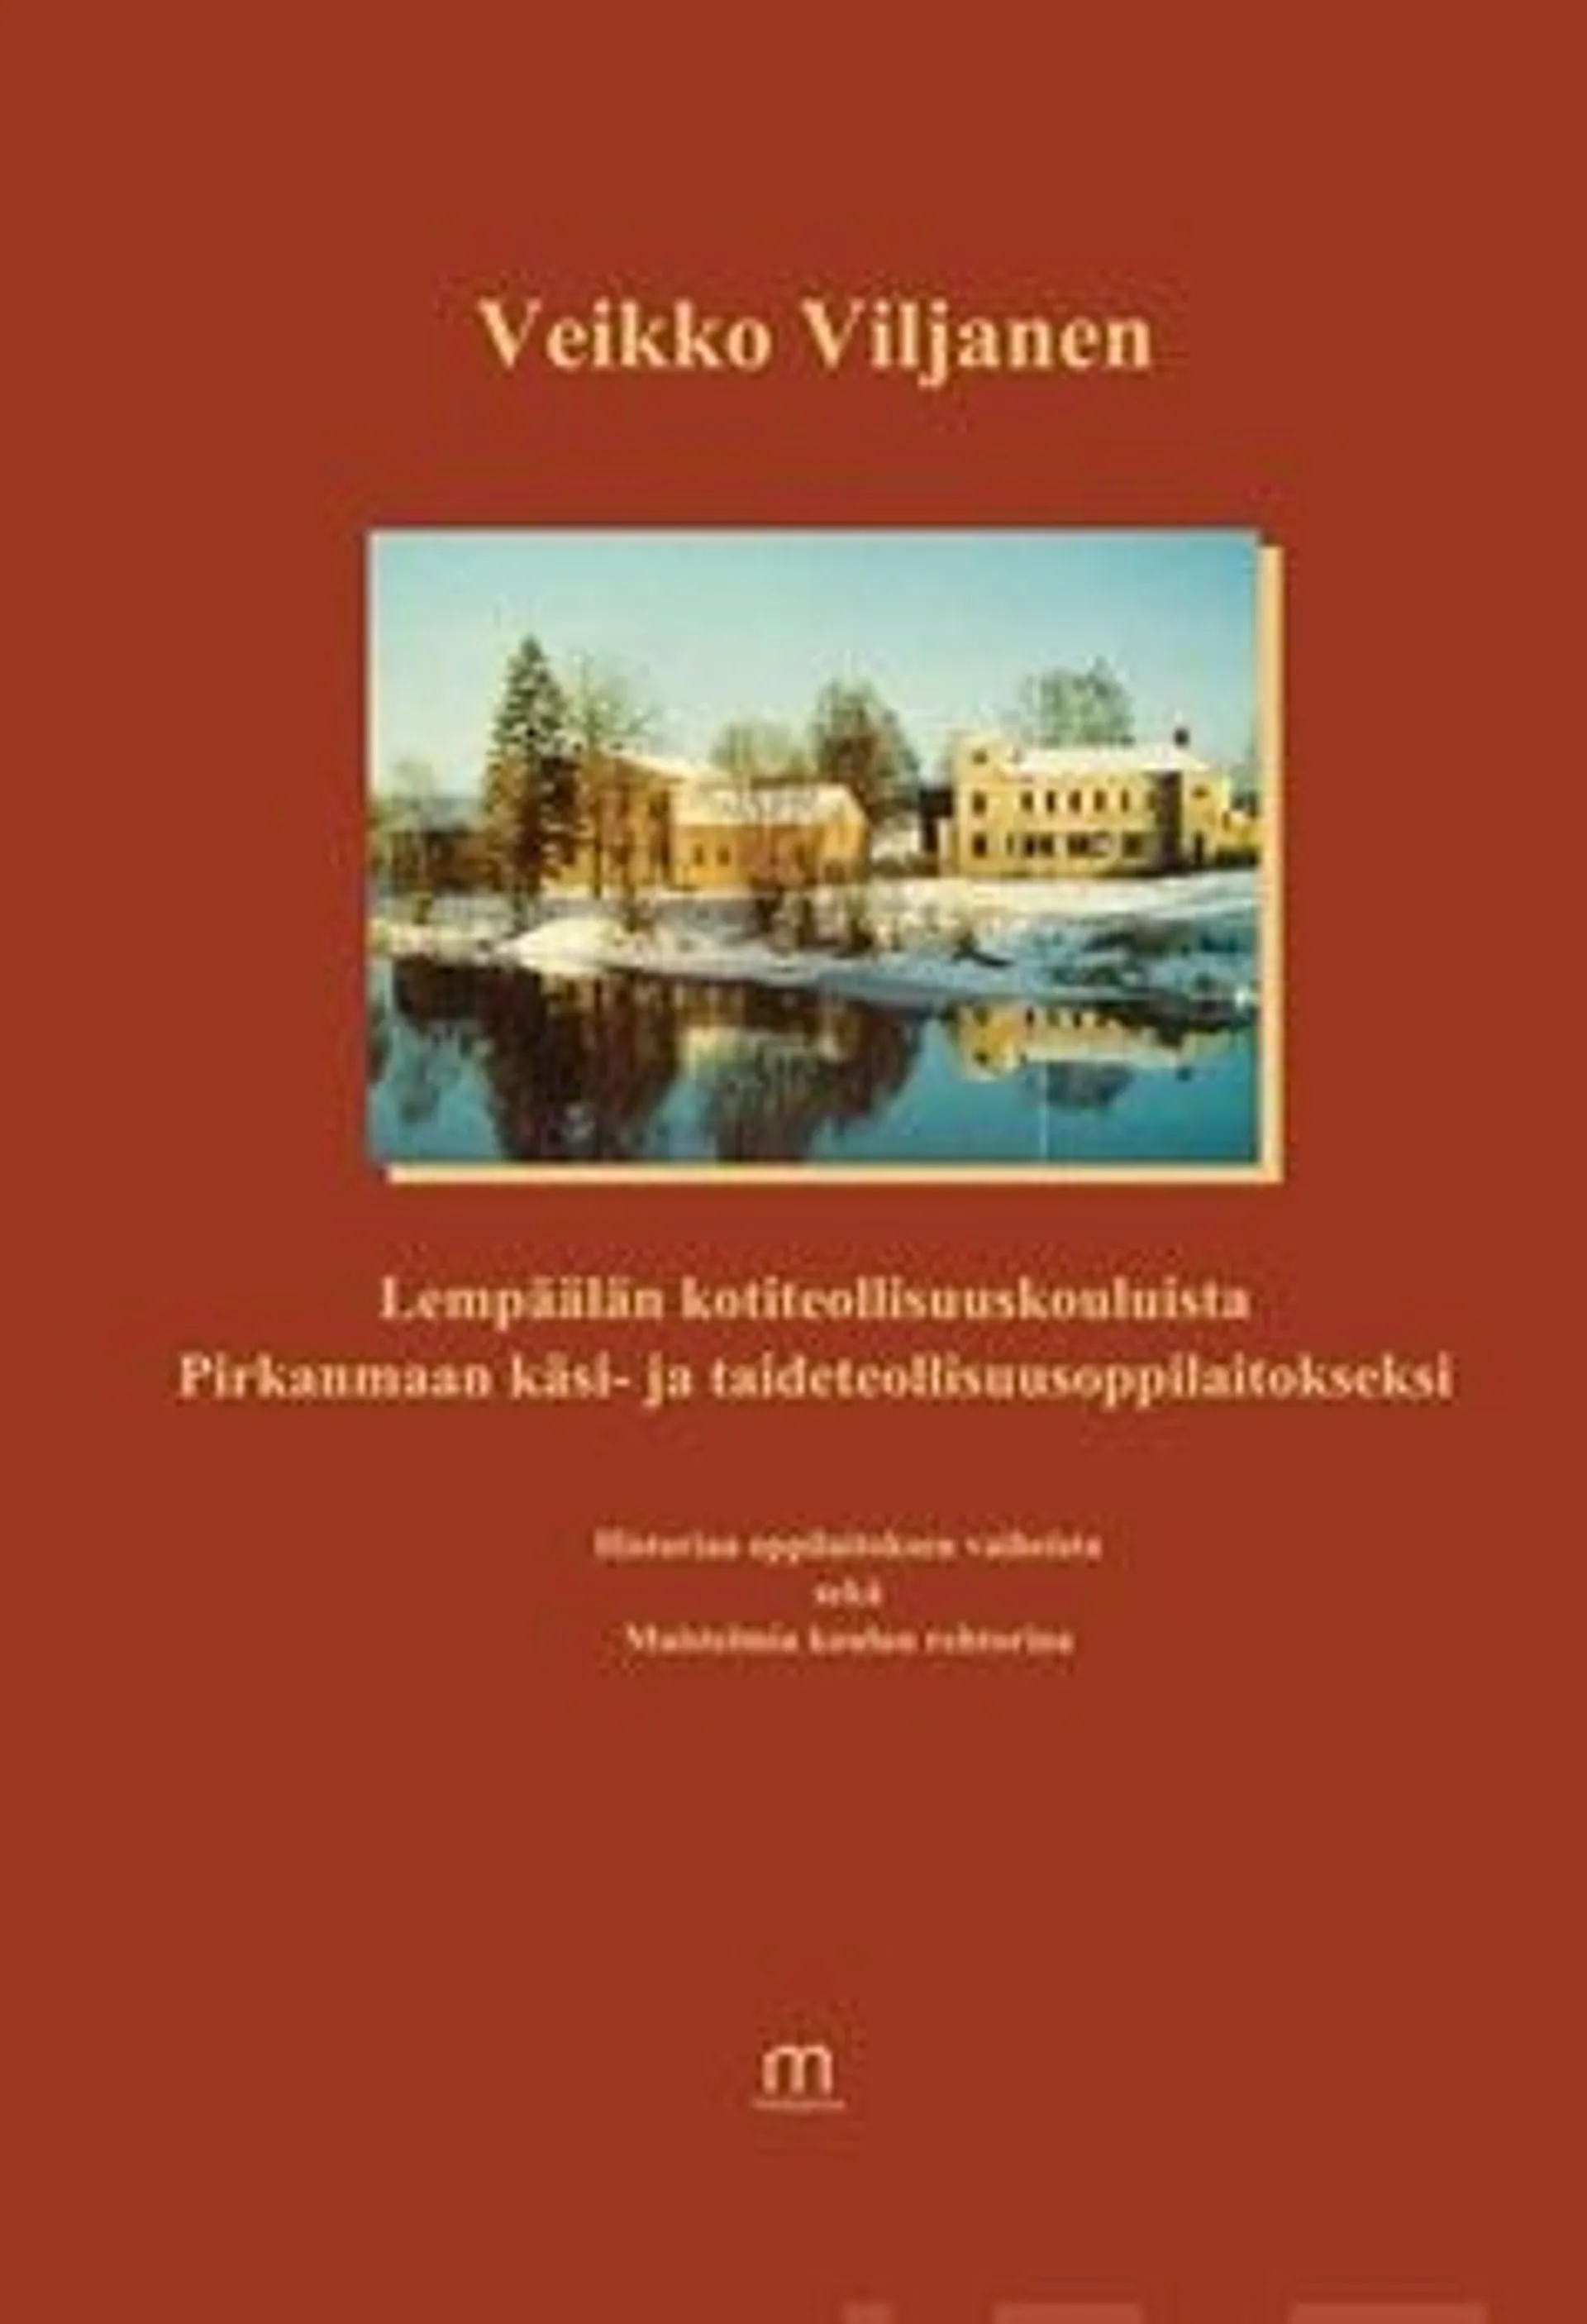 Viljanen, Lempäälän kotiteollisuuskouluista Pirkanmaan käsi- ja taideteollisuusoppilaitokseksi